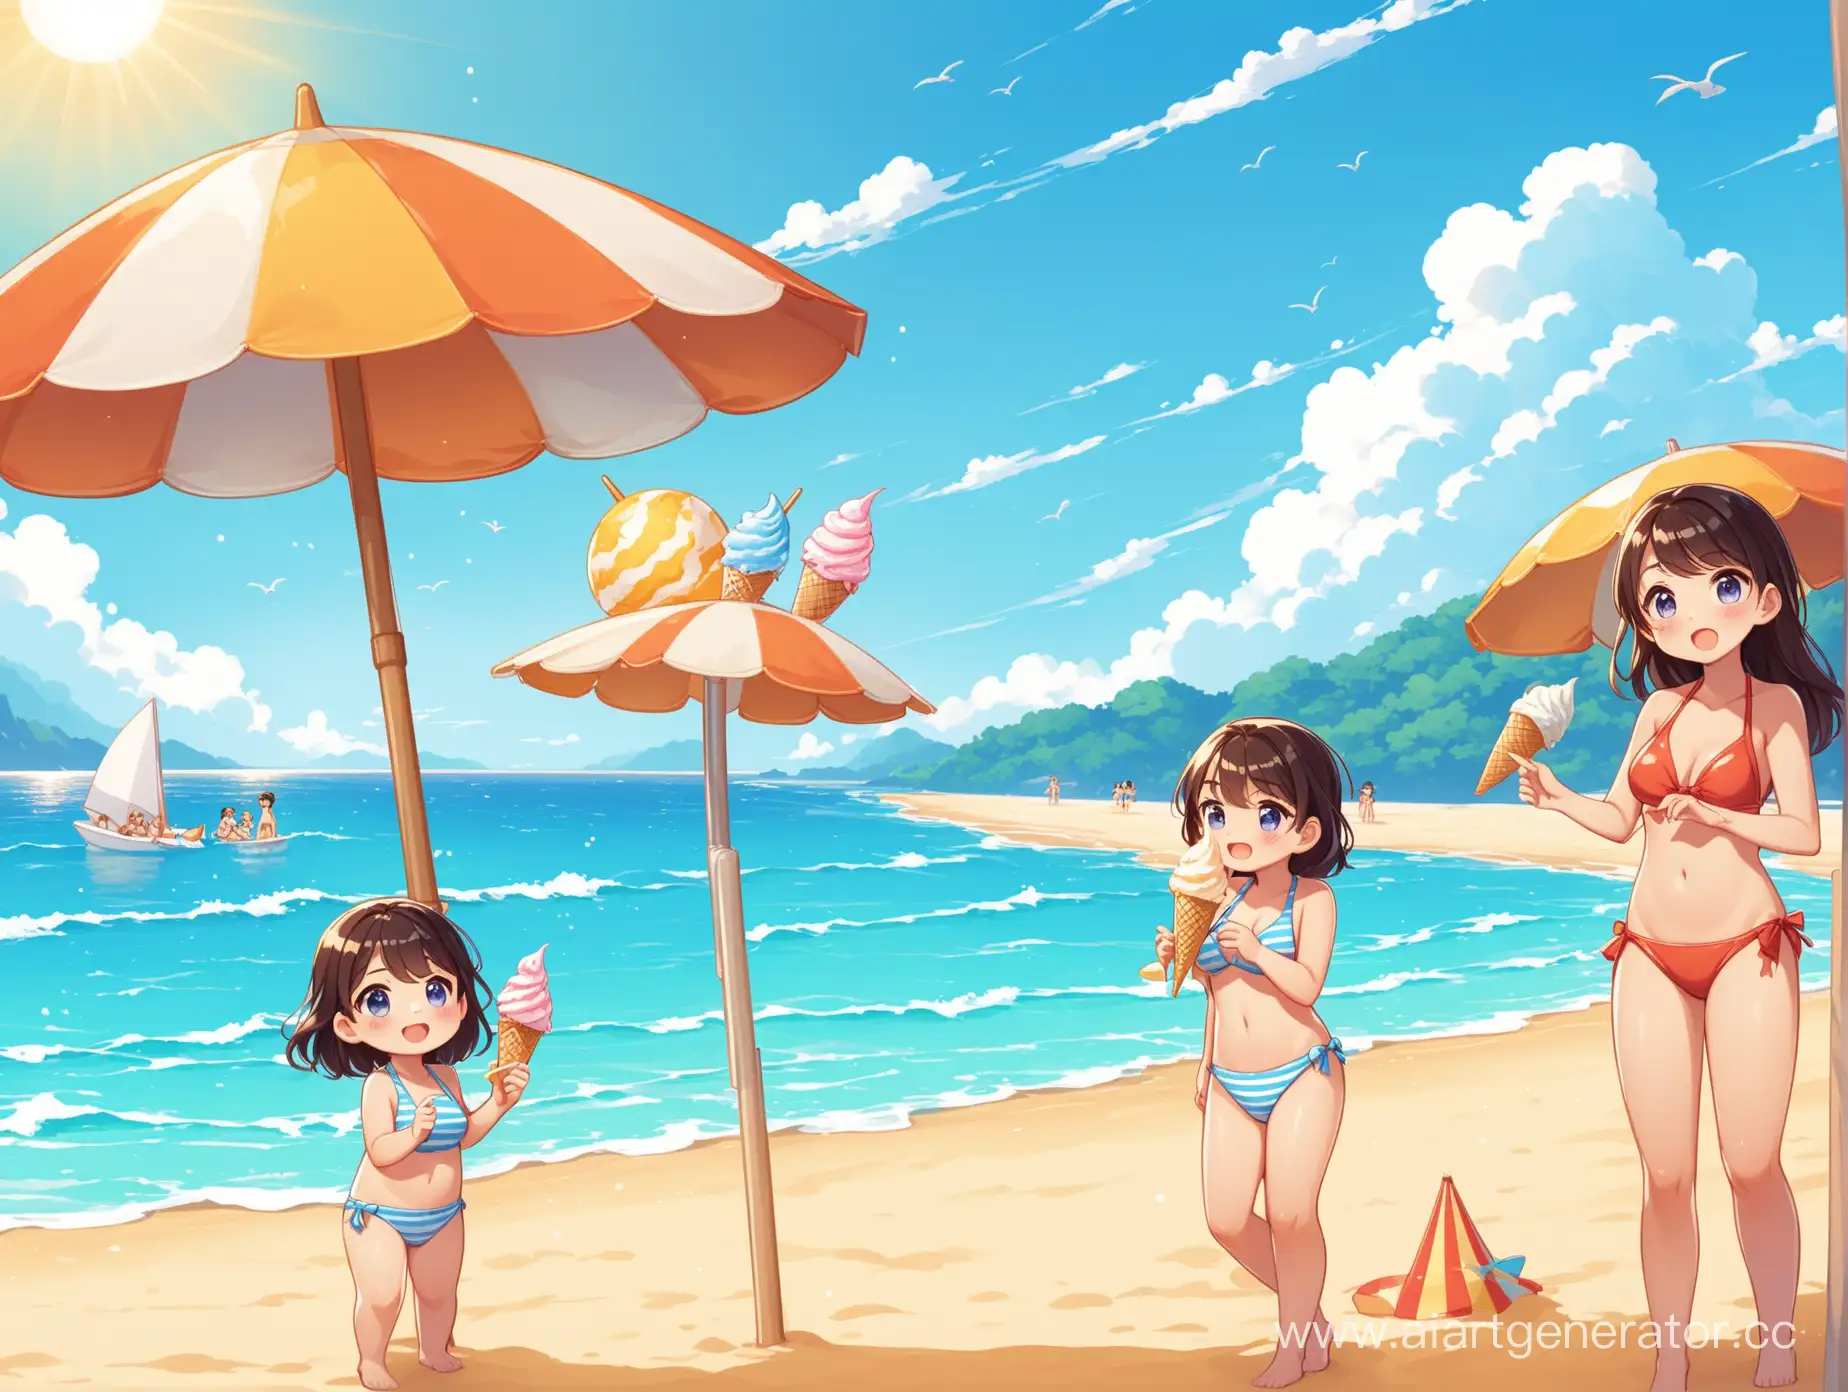 Пляж, песок, море, солнце. Один персонаж стоит на пляже и ест мороженое. Второй и третий персонажи пытаются выкинуть четвертого в море. Пятый и шестой загорают. Седьмой персонаж стоит под зонтиком.